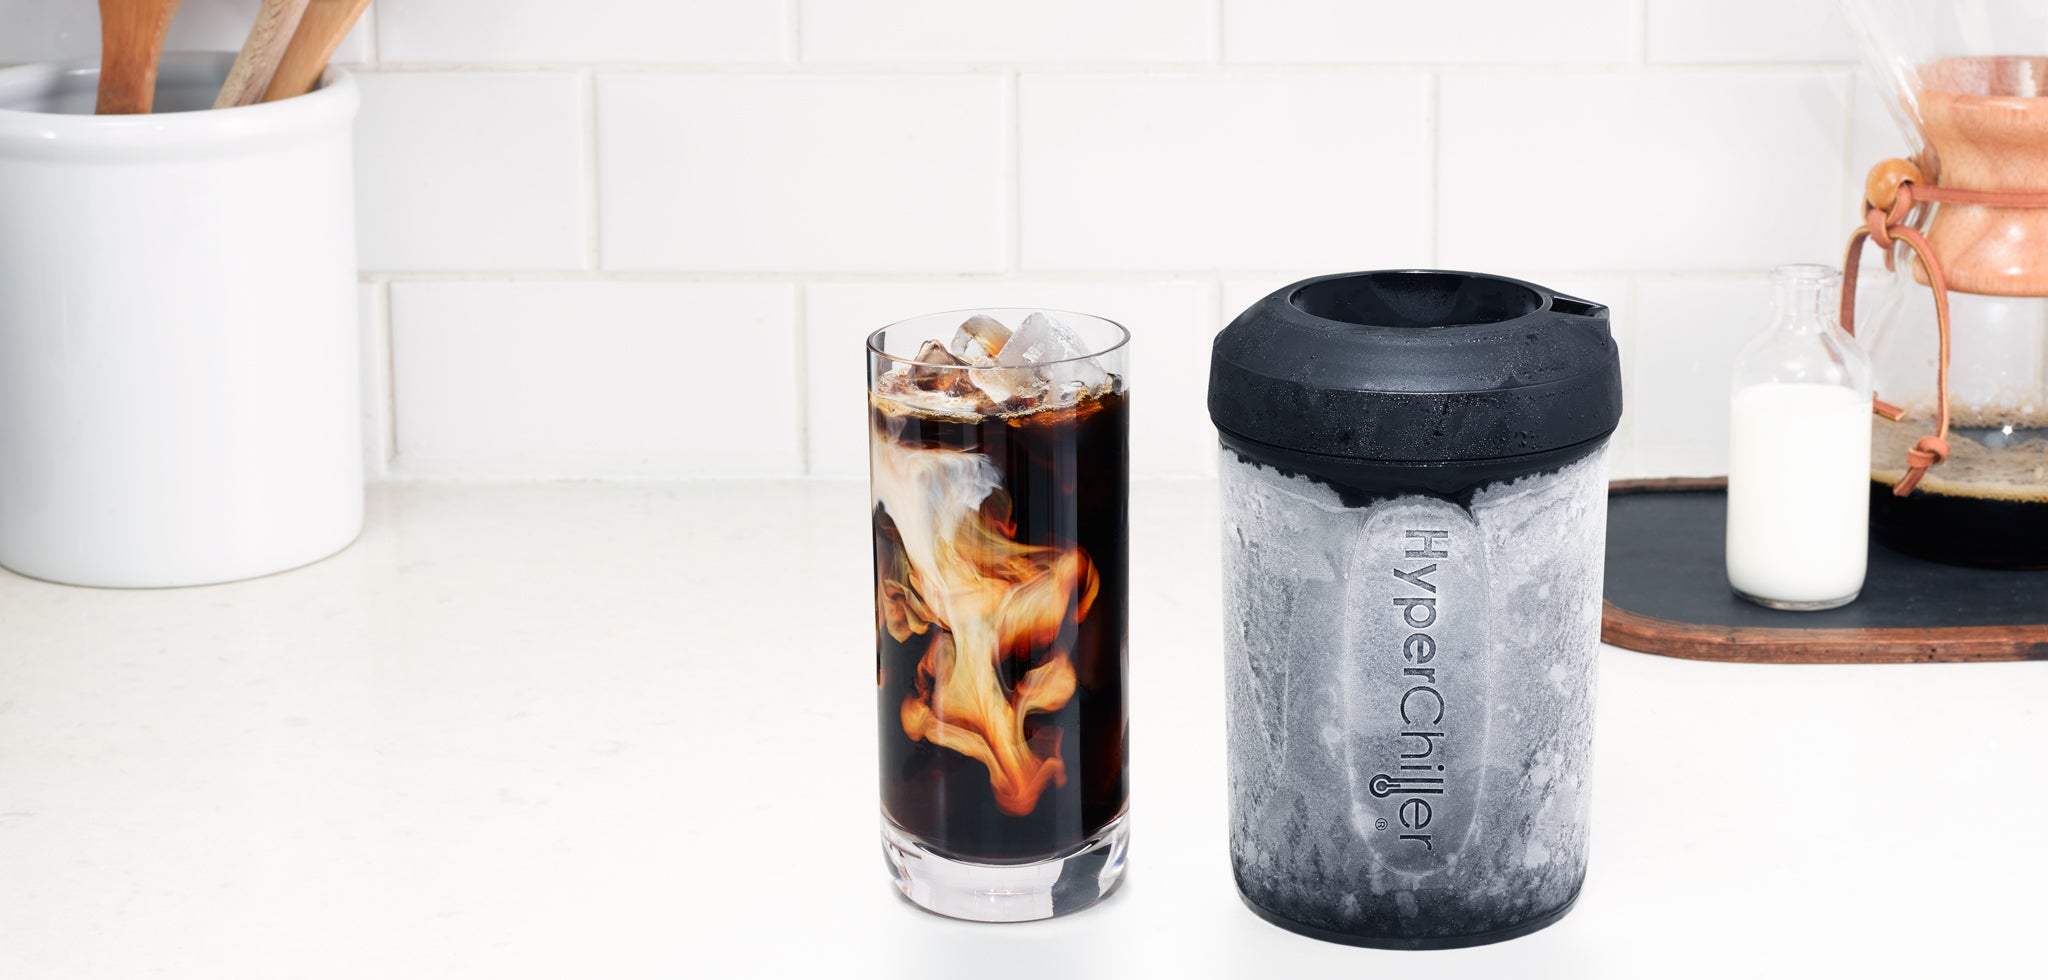 HyperChiller Instant Iced Coffee Maker » Gadget Flow